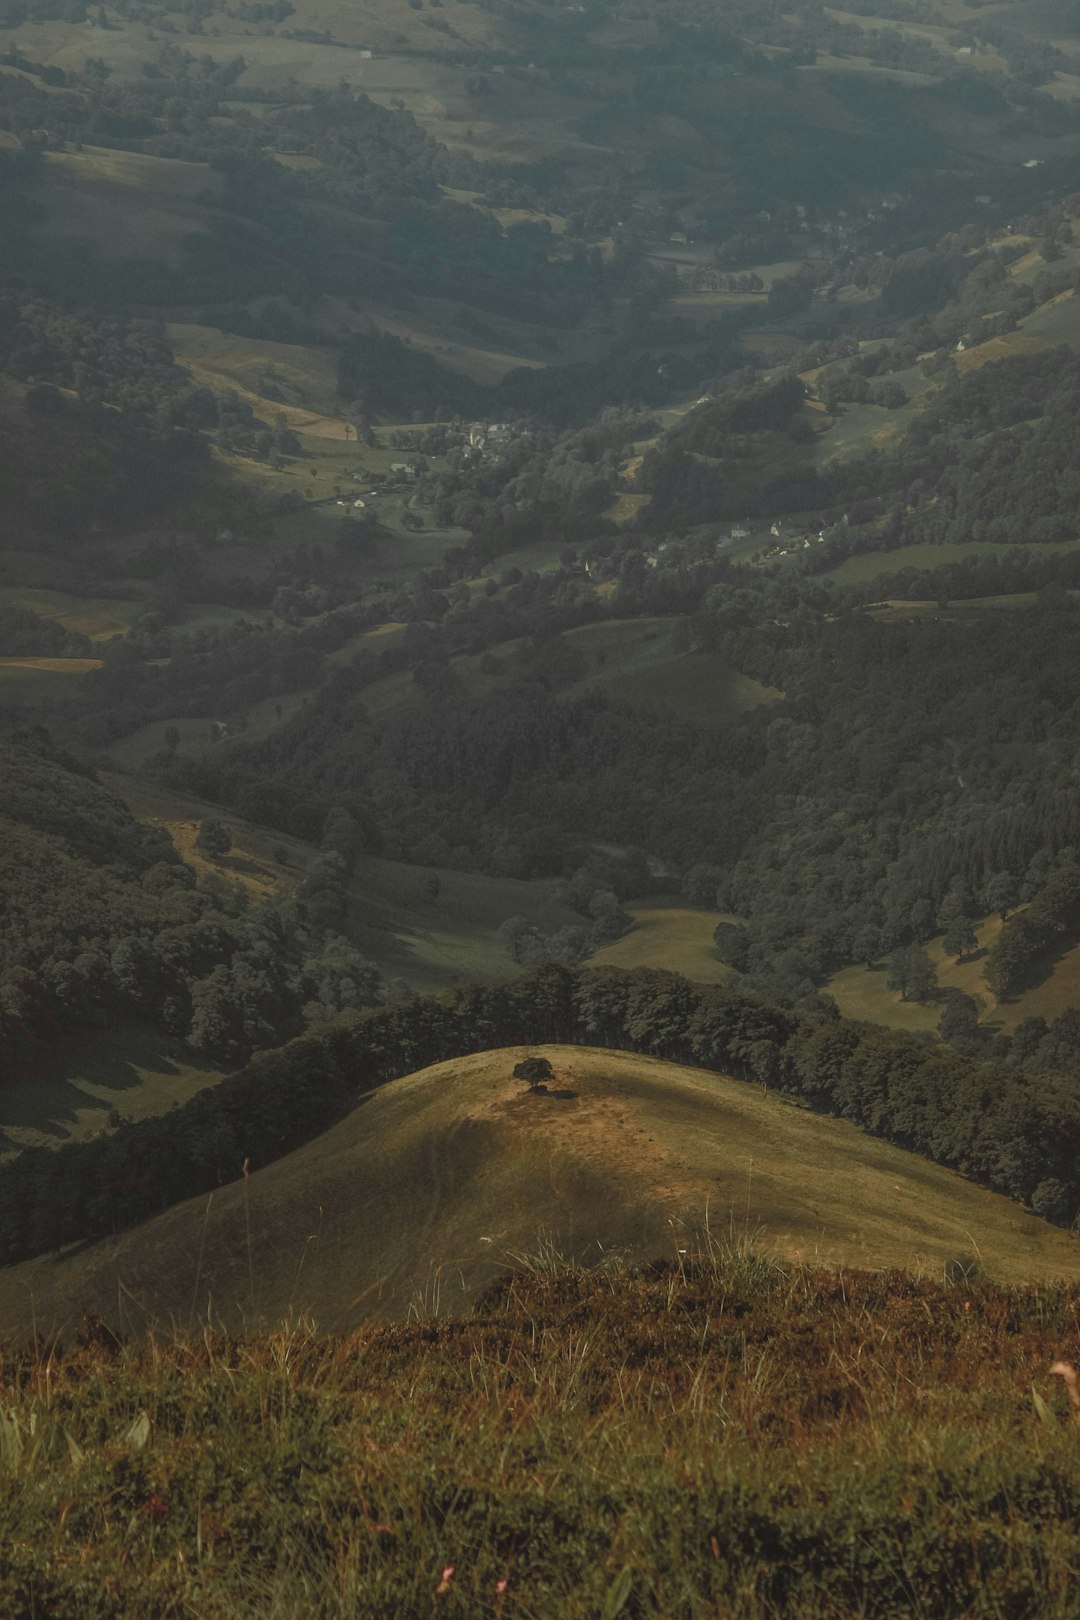 Hill photo spot Parc naturel régional des Volcans d'Auvergne Mont-Dore